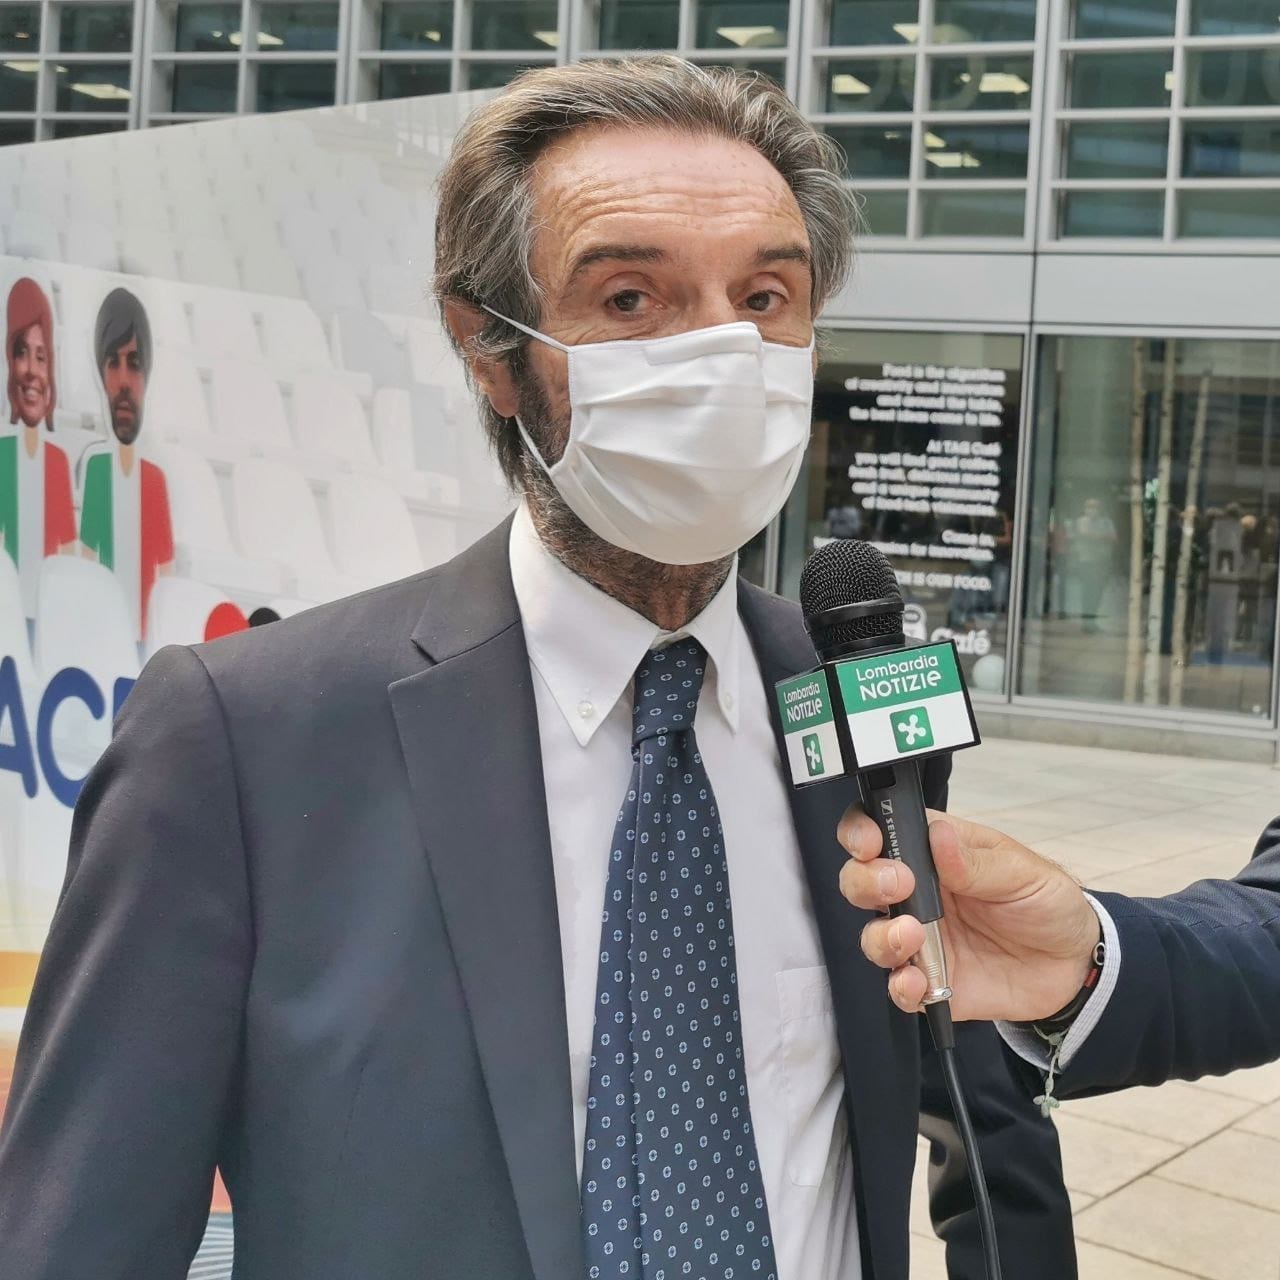 Vaccinazioni in Lombardia, Fontana: “Teniamo una quota di sicurezza”